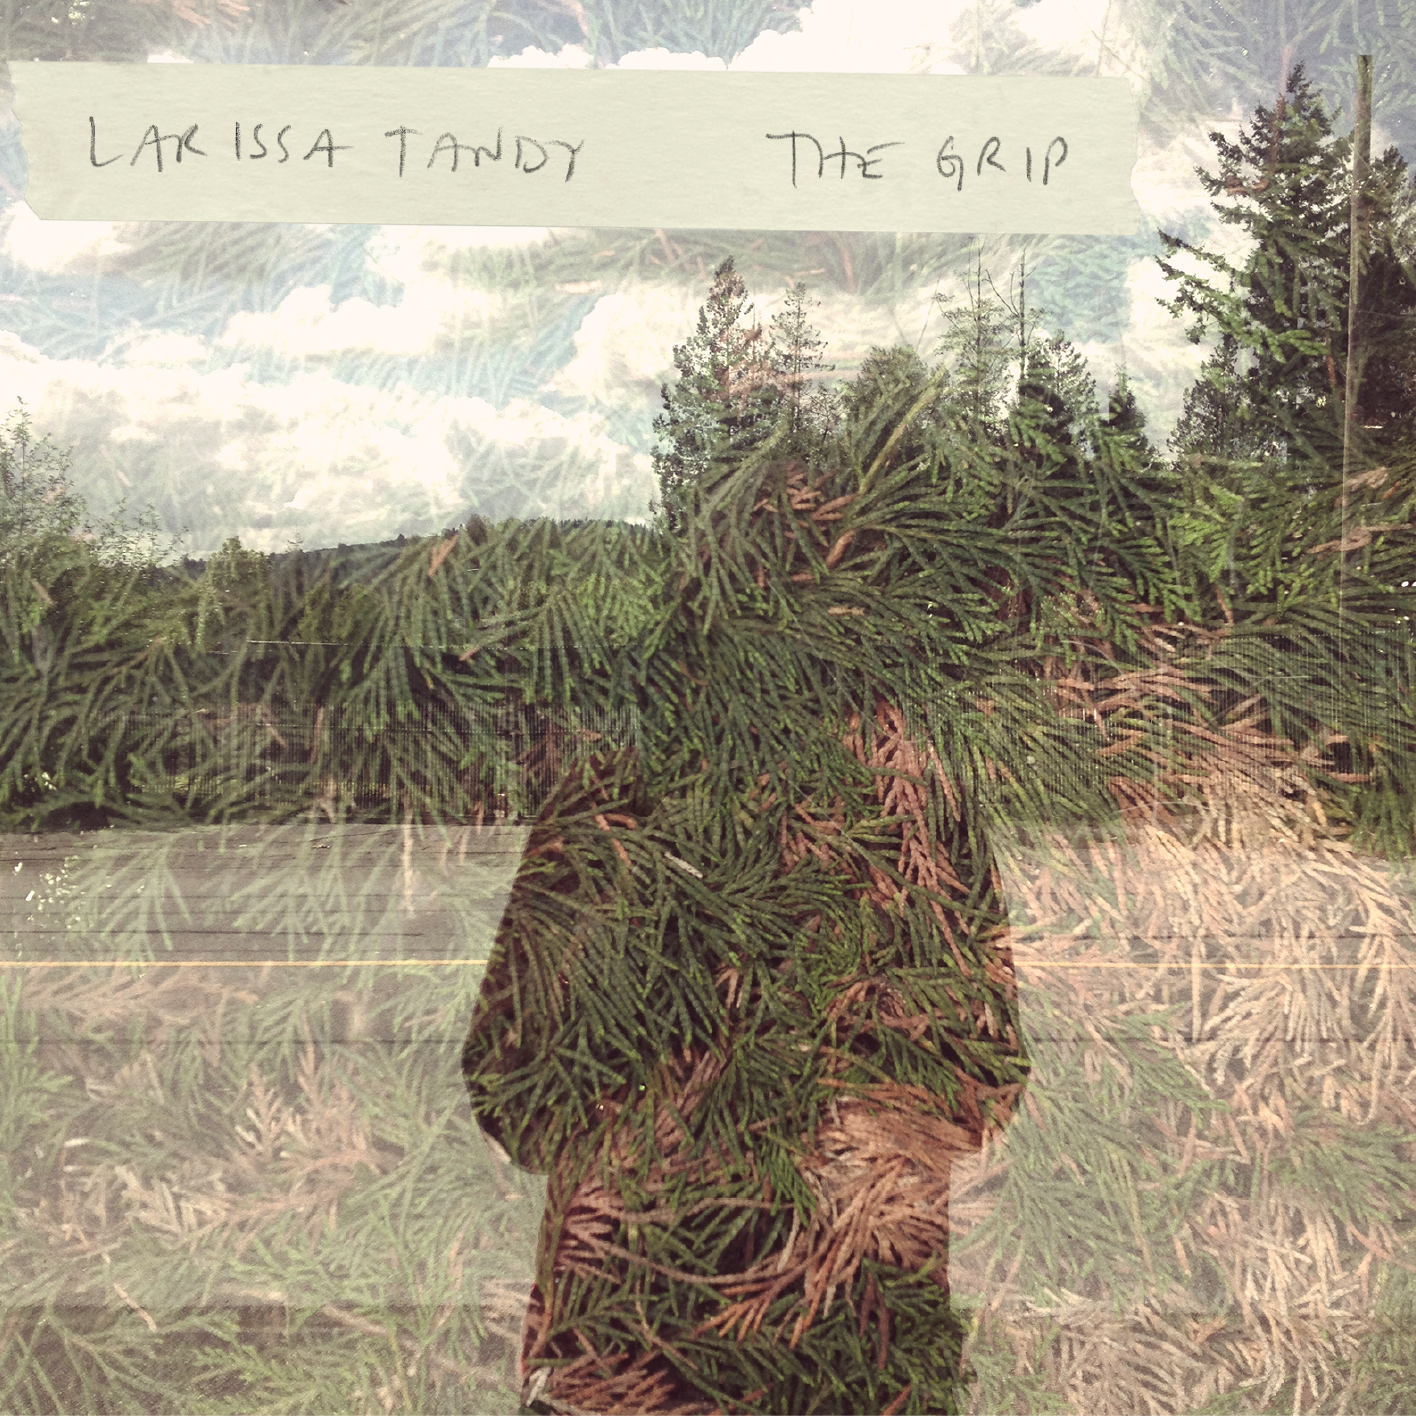 Larissa Tandy – The Grip